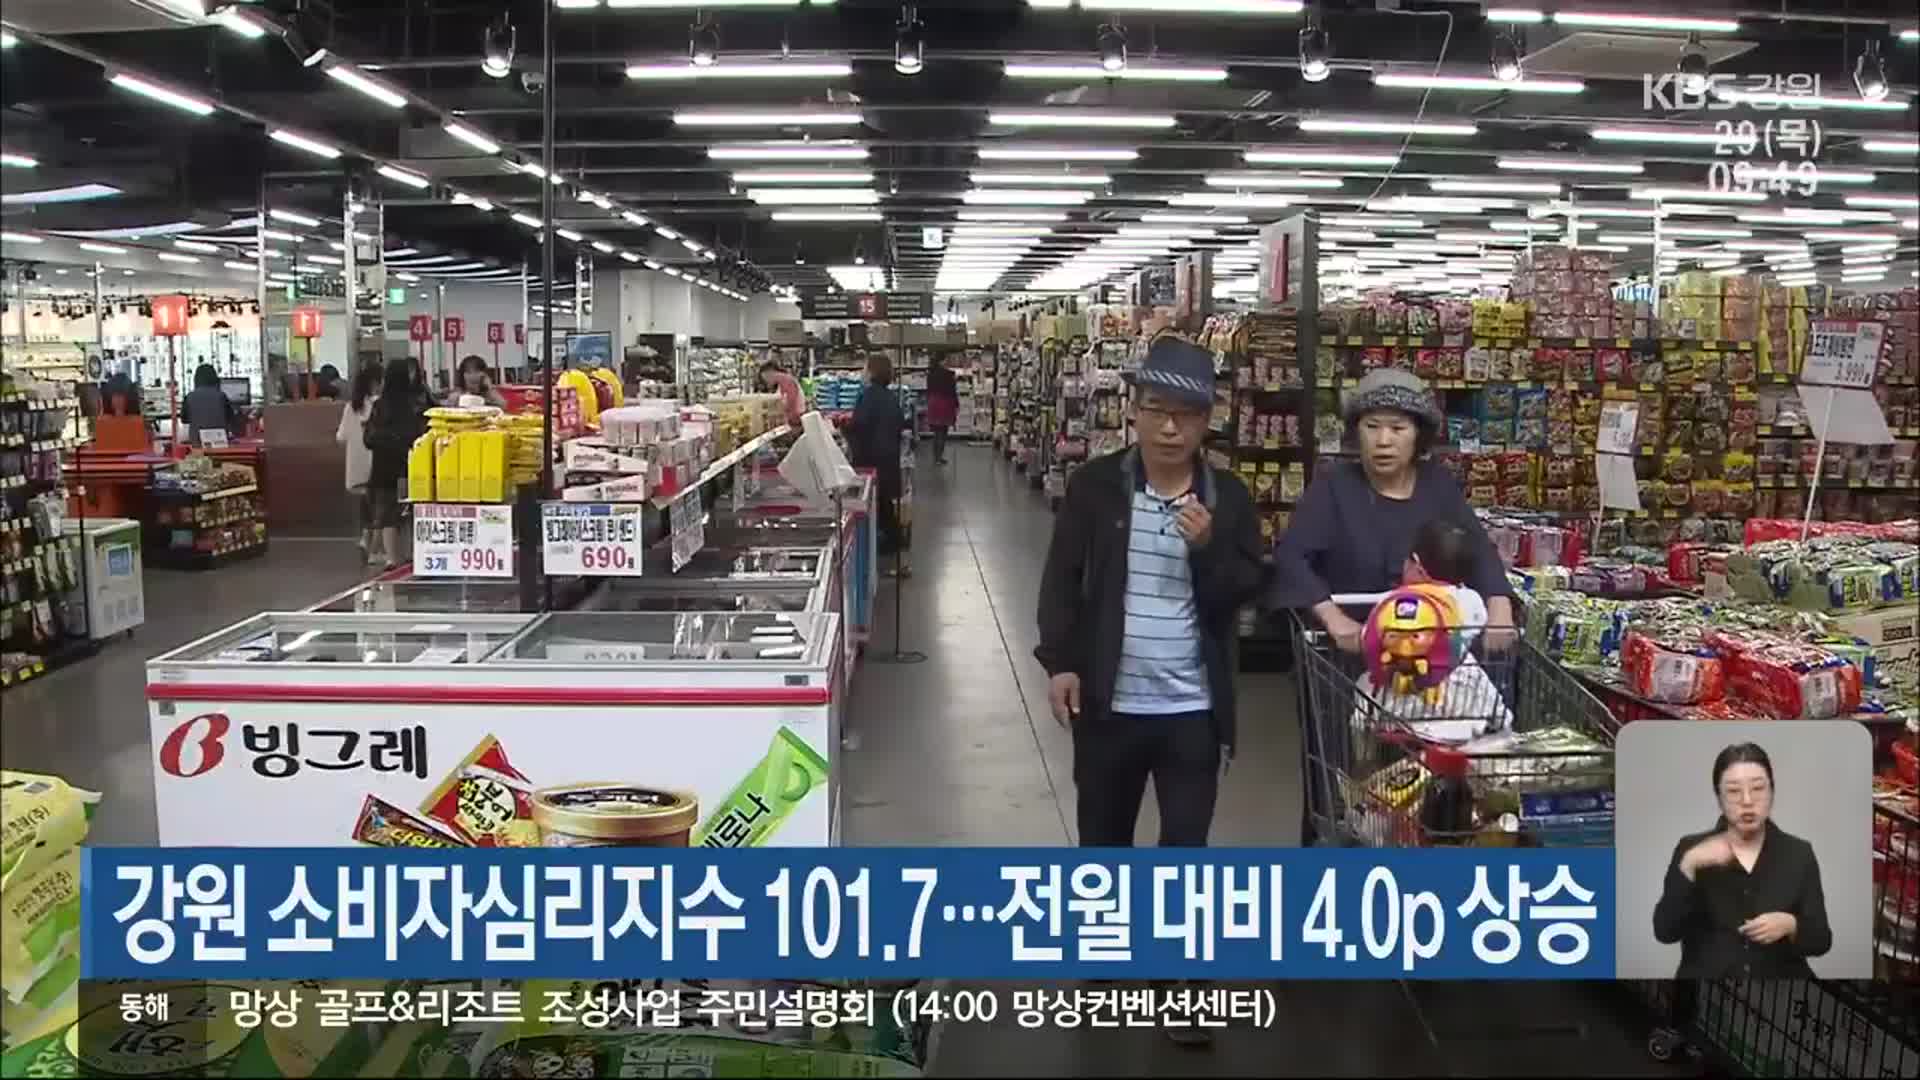 강원 소비자심리지수 101.7…전월 대비 4.0p 상승